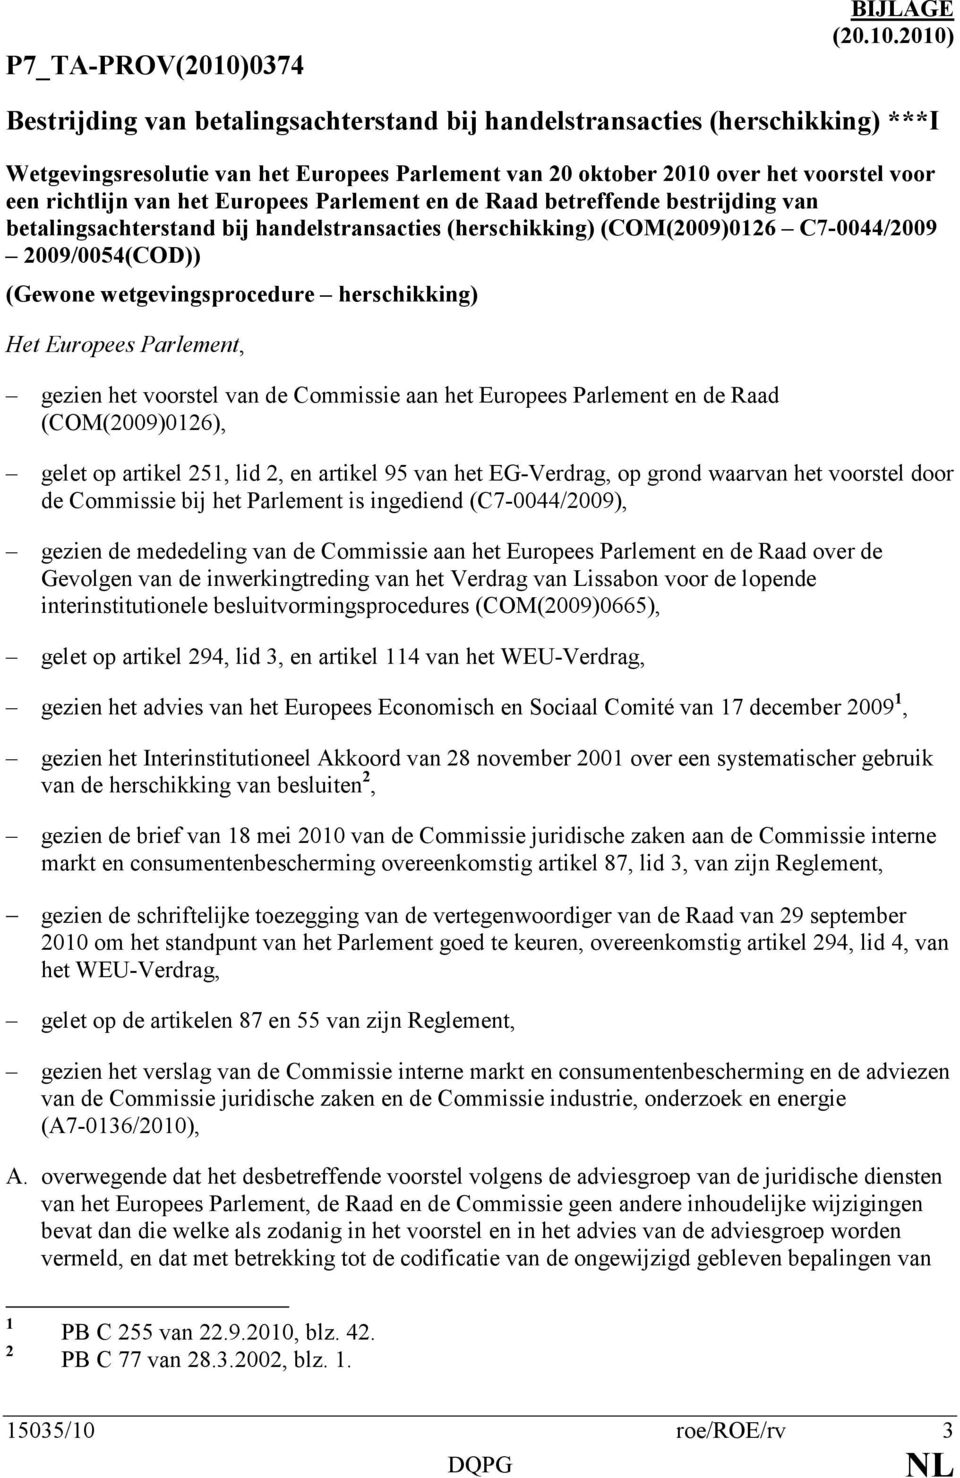 2010) Bestrijding van betalingsachterstand bij handelstransacties (herschikking) ***I Wetgevingsresolutie van het Europees Parlement van 20 oktober 2010 over het voorstel voor een richtlijn van het